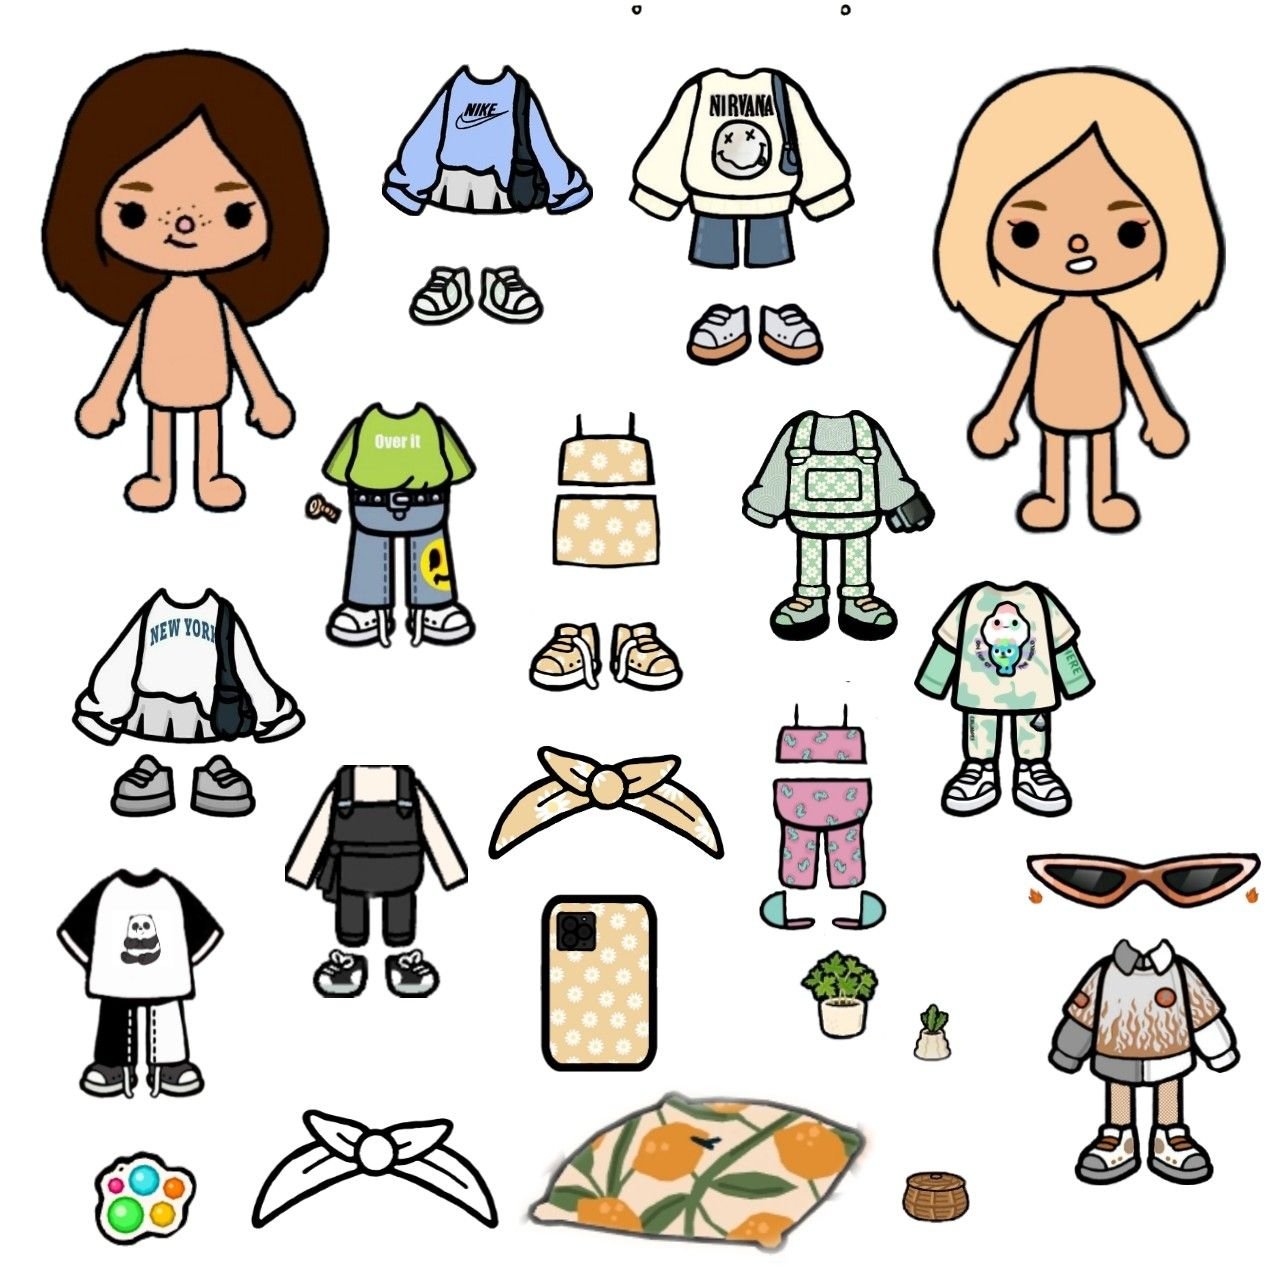 Бумажные куклы тока бока распечатать. Бумажные человечки с одеждой. Тока бока одежда для персонажей. Бумажная кукла тока бока с одеждой. Рисунки тока бока одежда.